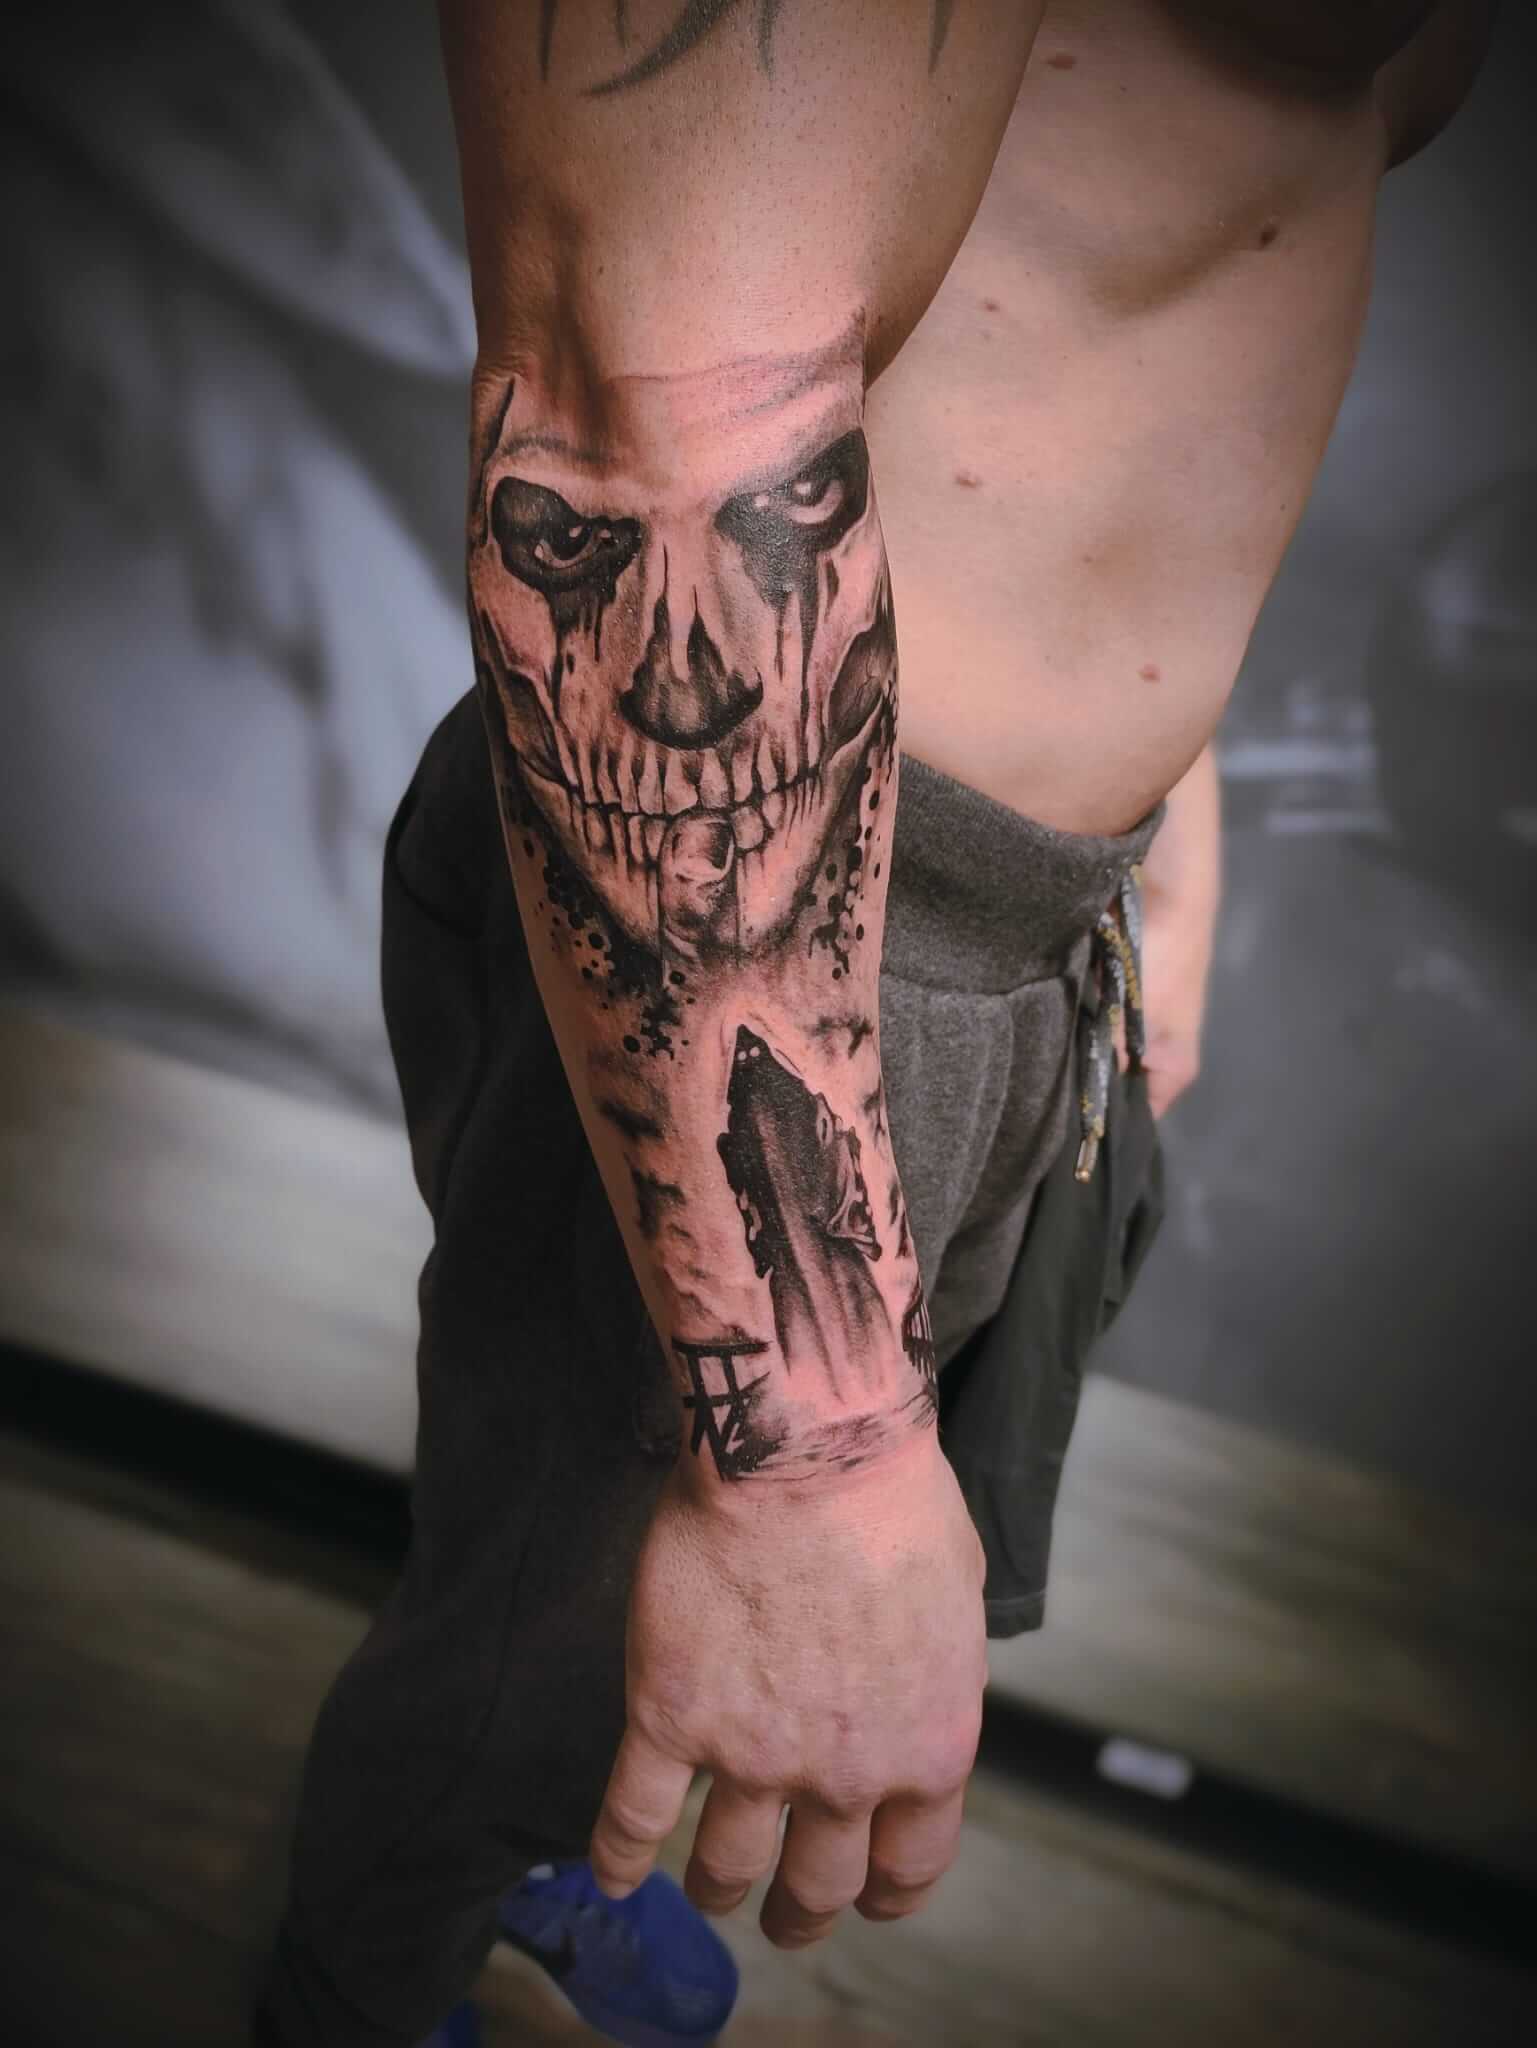 Skull Death Tattoo